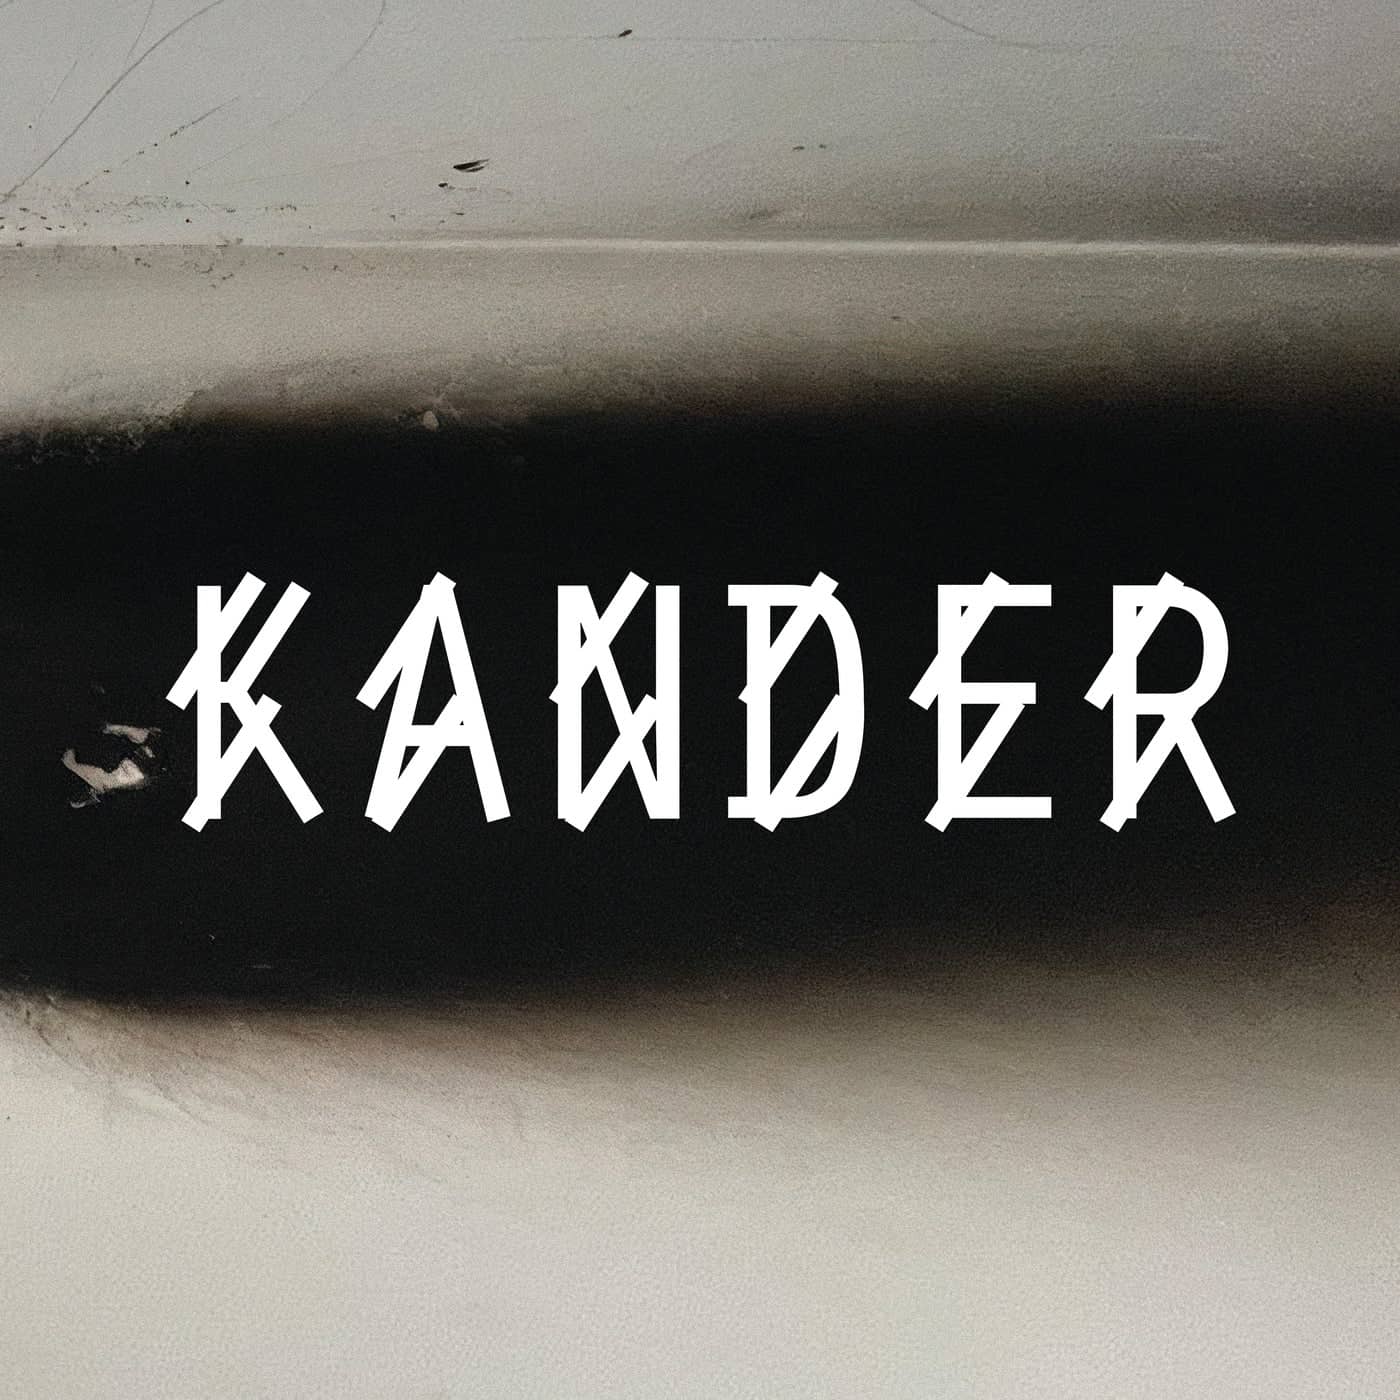 Download Kander - R002 on Electrobuzz